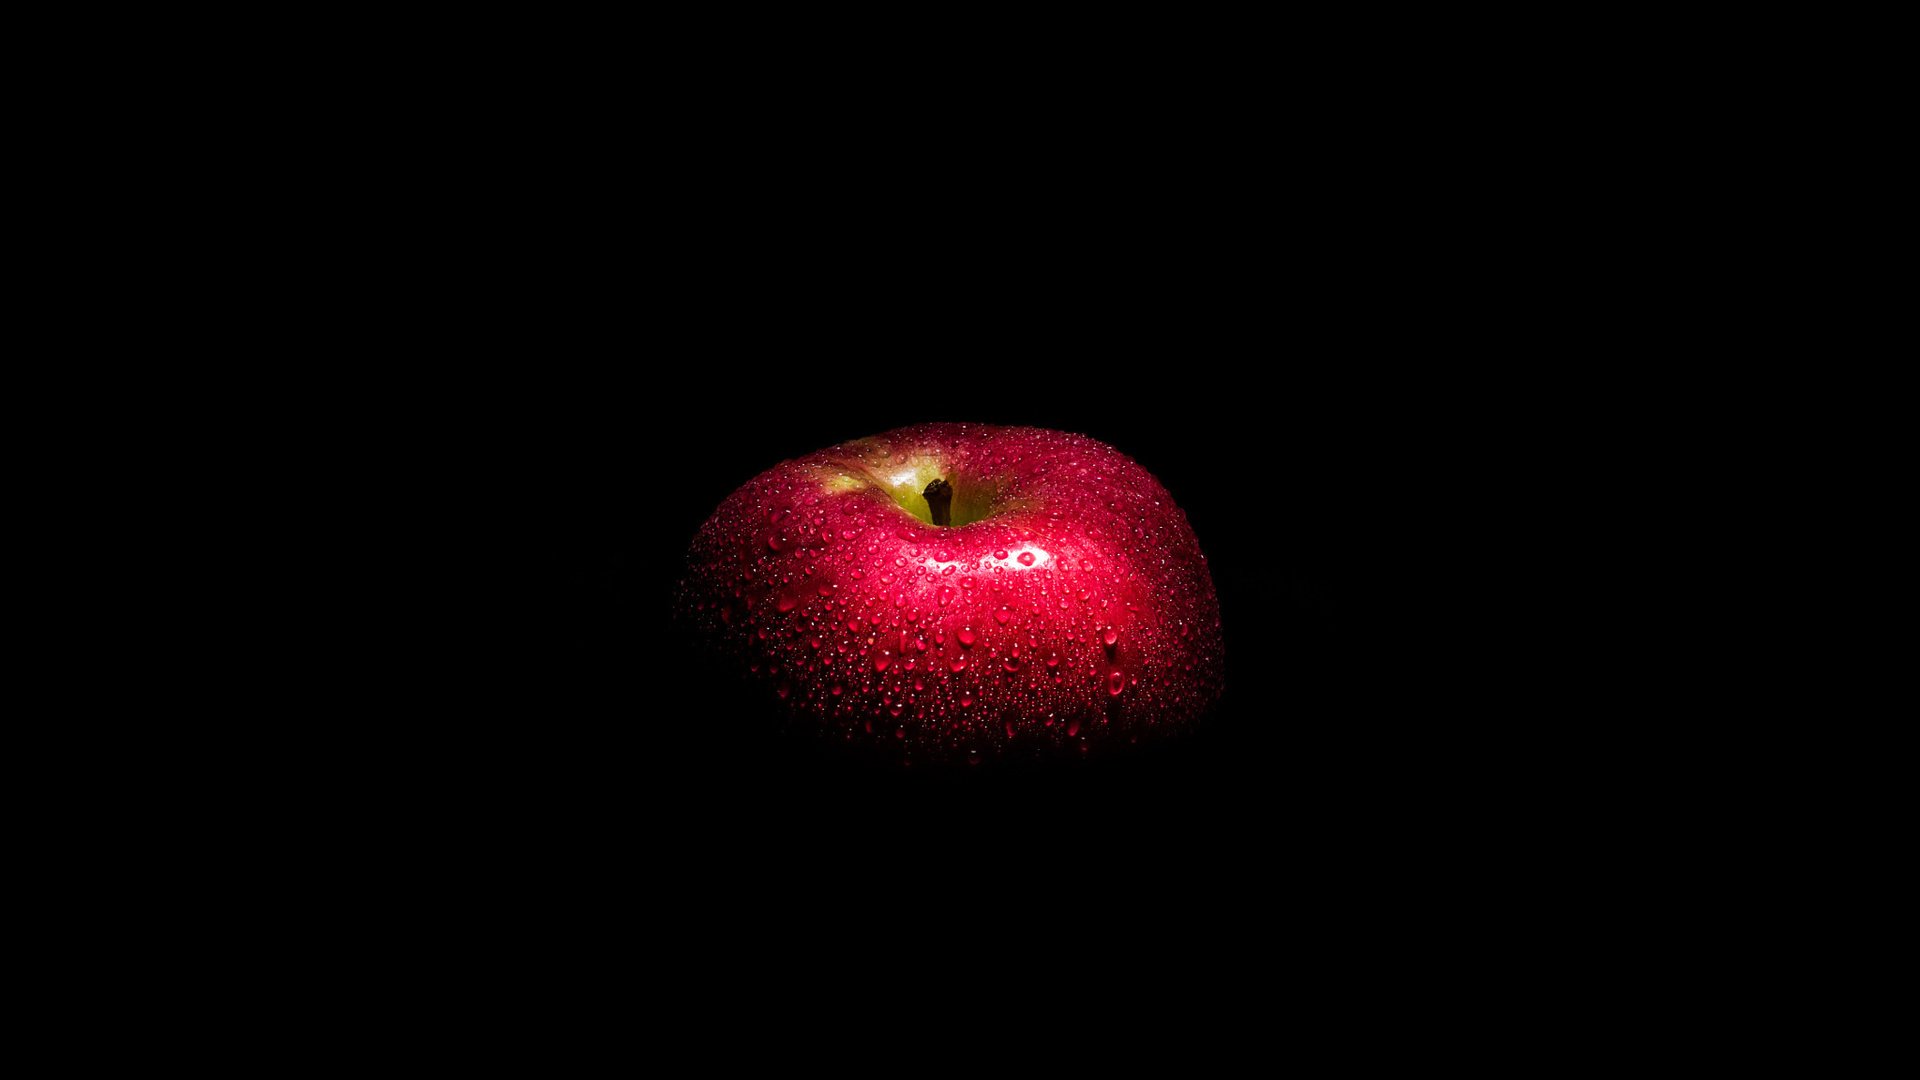 어두운 사과 벽지,정물 사진,검정,빨간,과일,사과